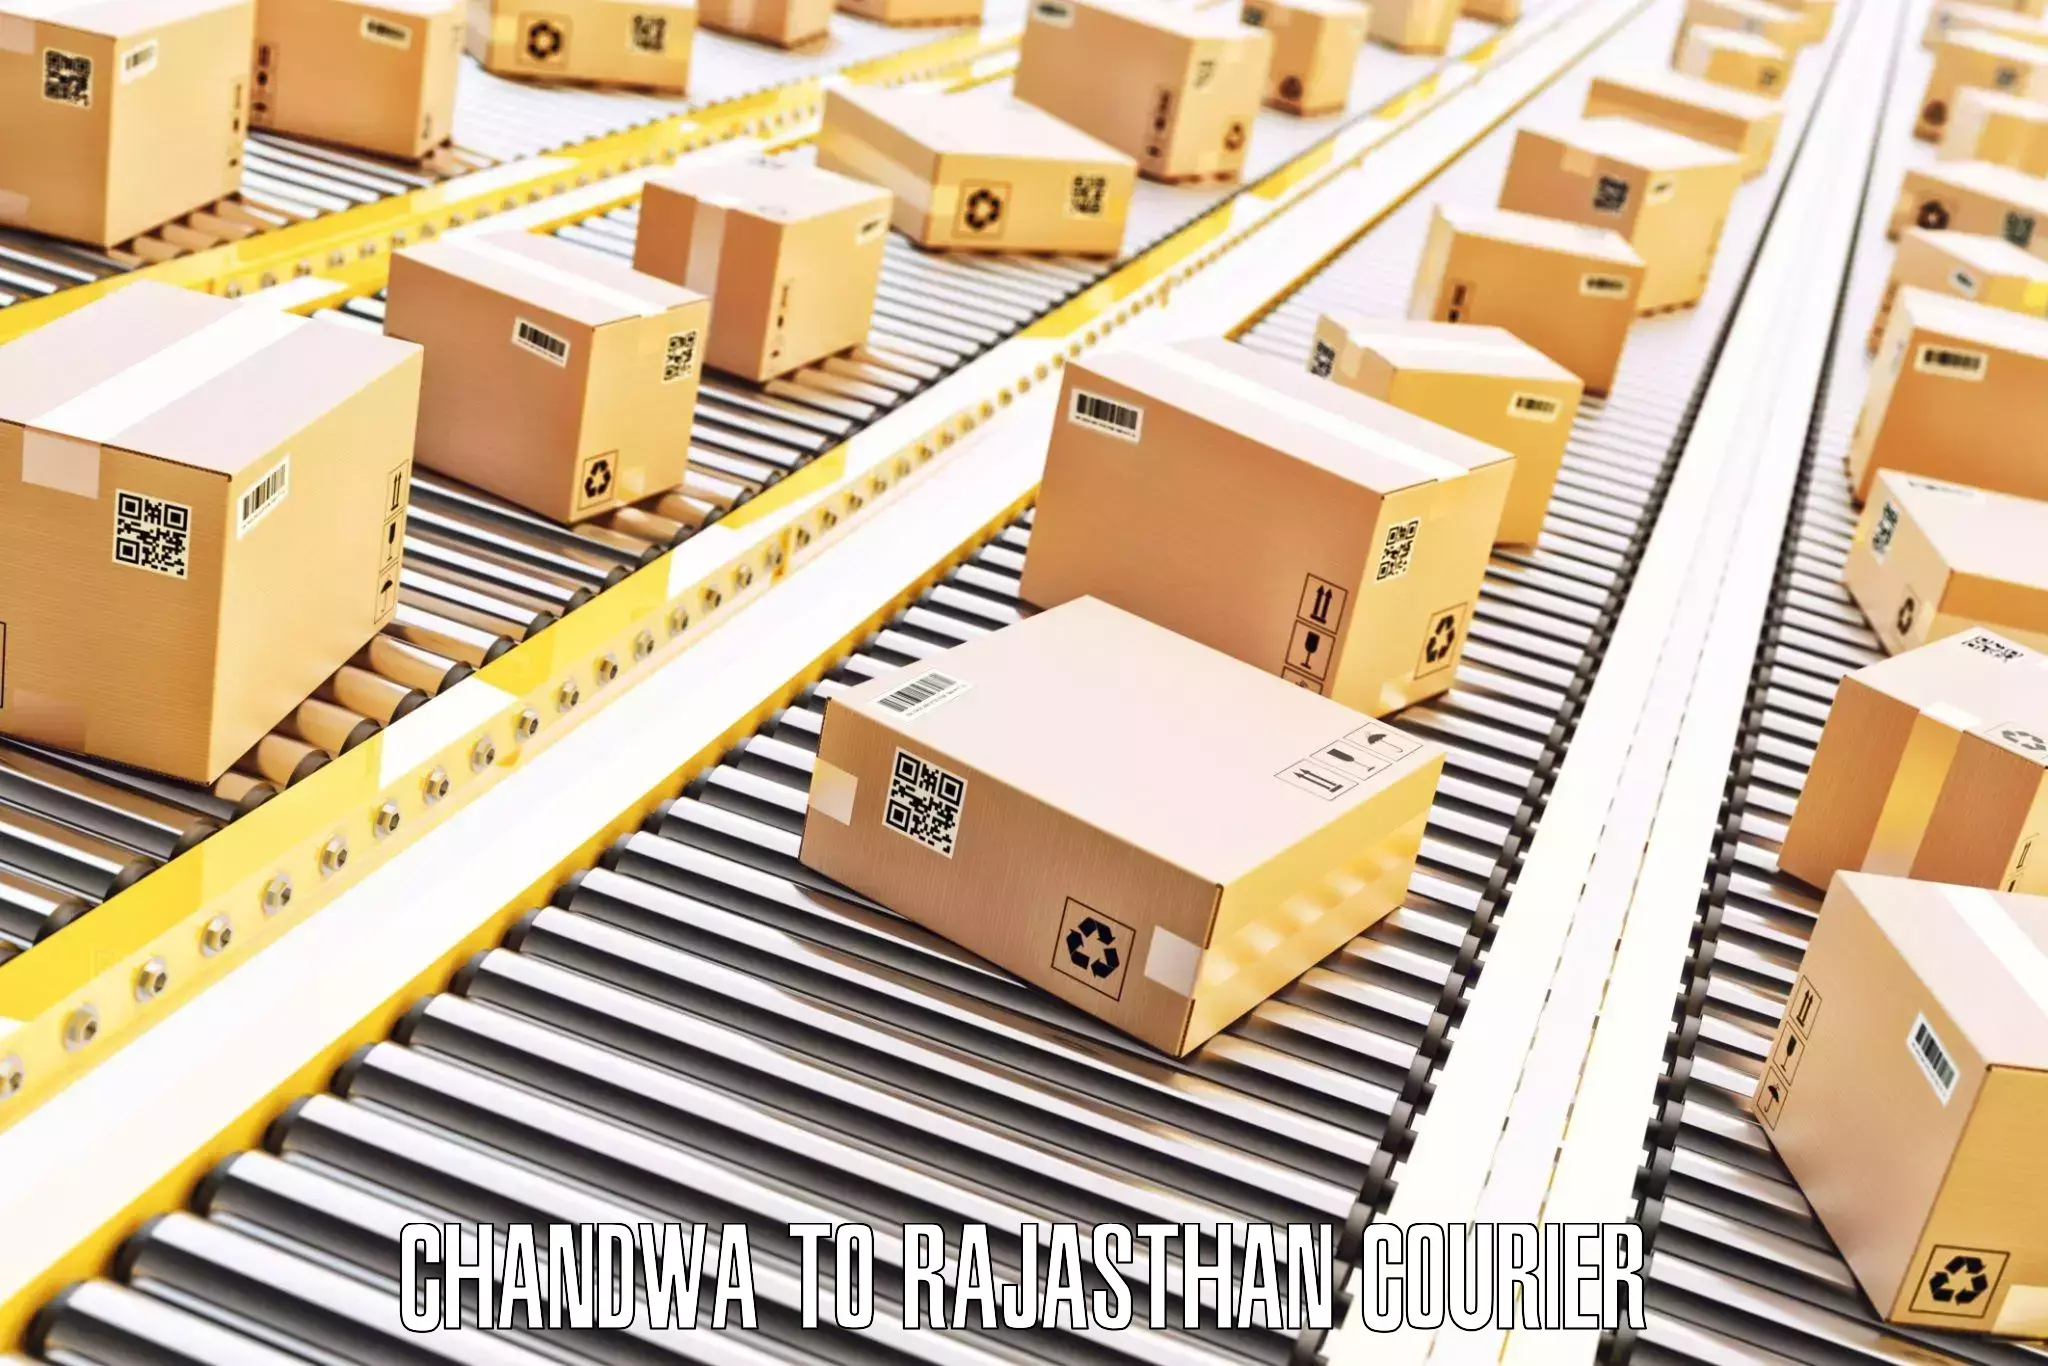 Luggage shipping strategy Chandwa to Karauli